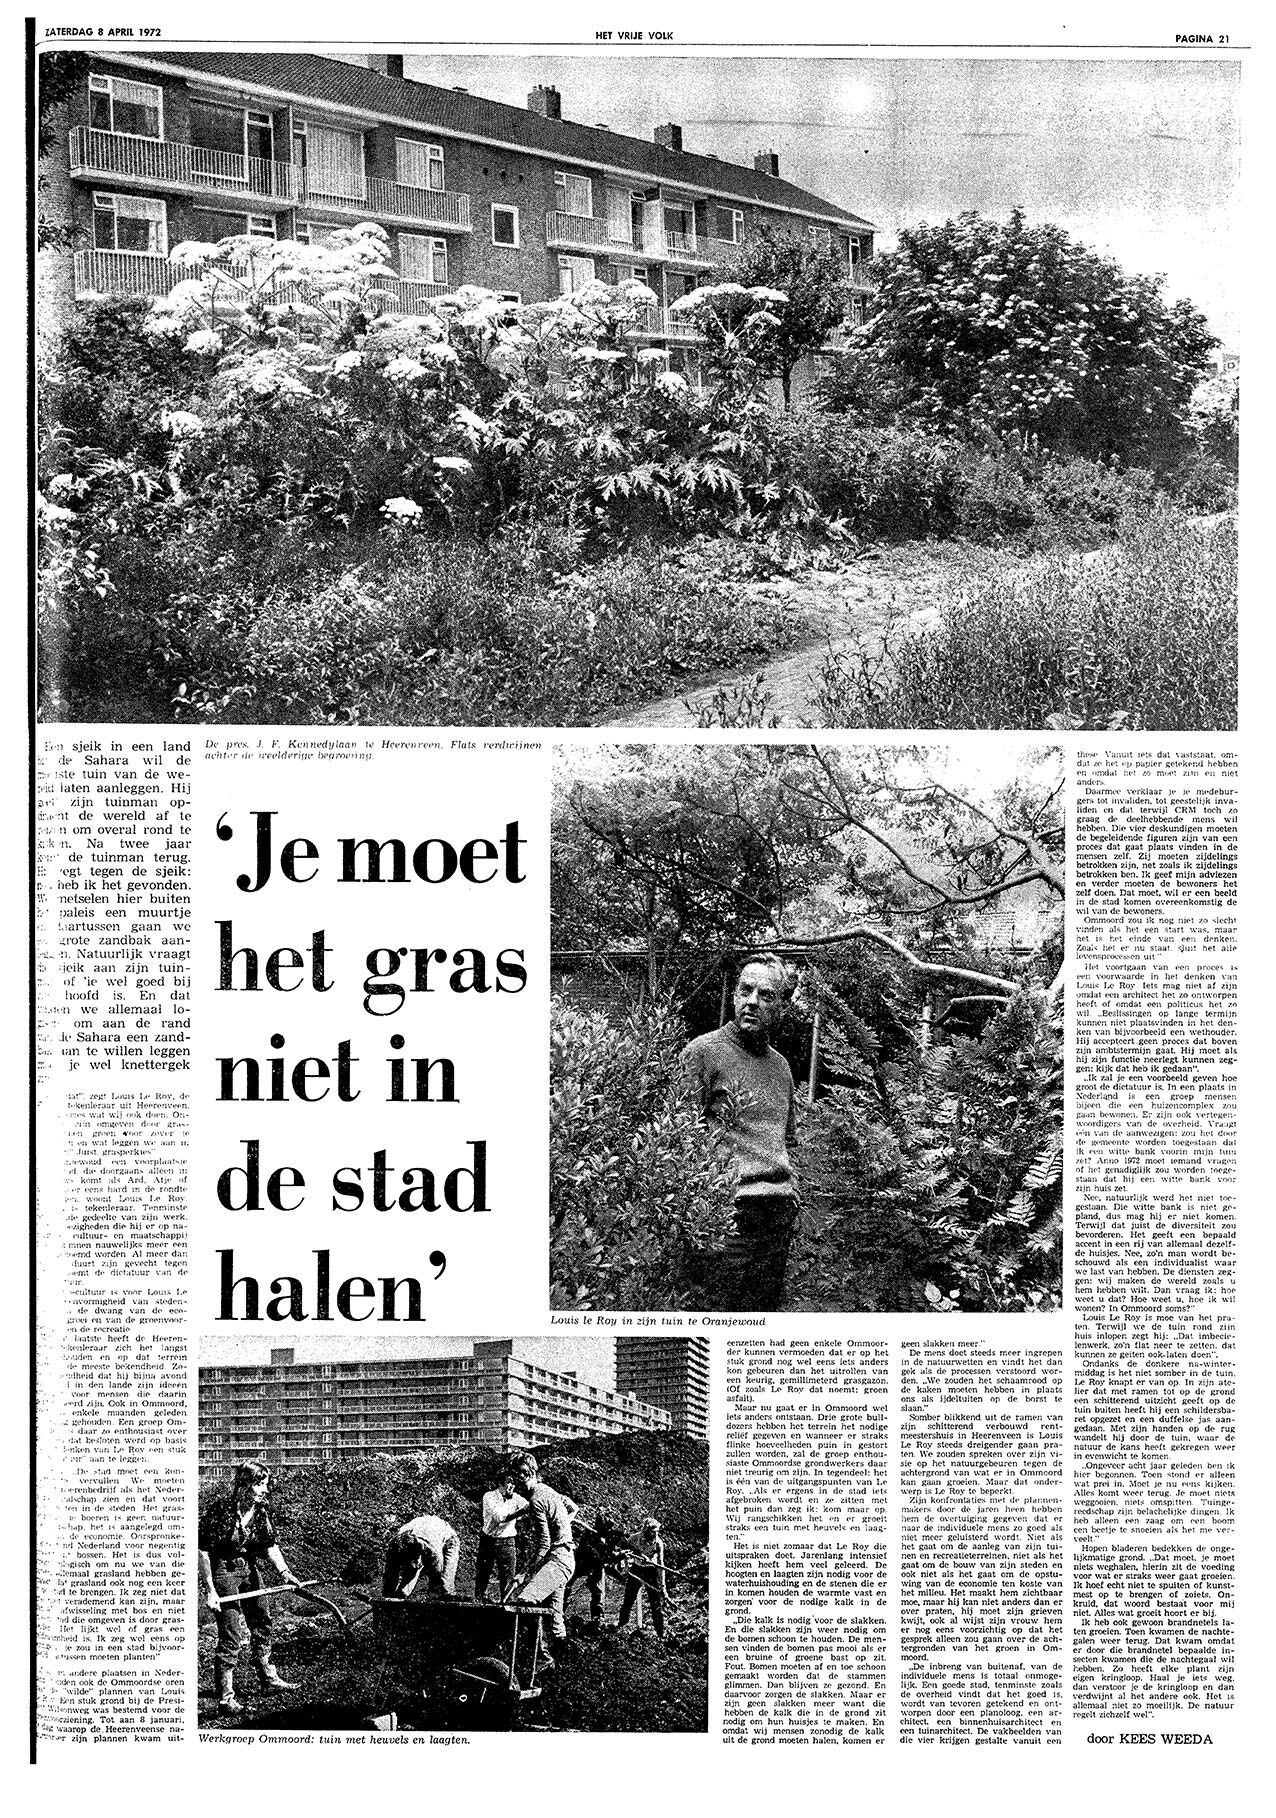 08-04-1972; nr. 8141; jrg. 27; ed. Dag bezitskenmerk Gemeentearchief Rotterdam 8356